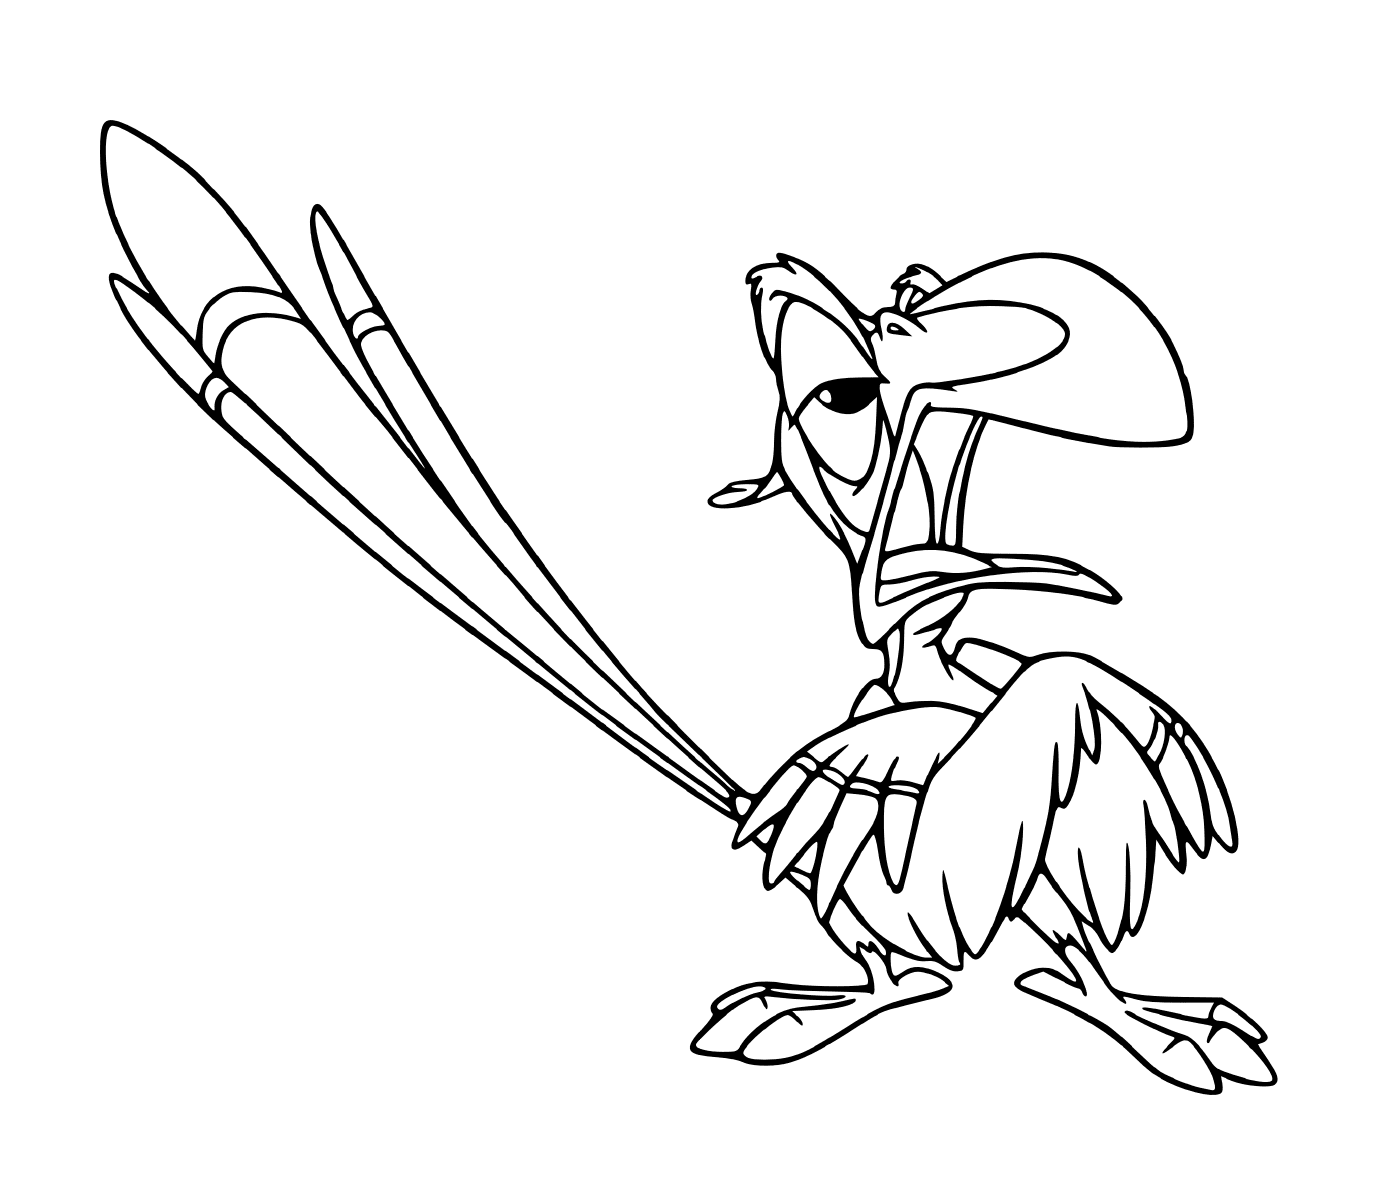  Zazu, personaje animado del Rey León de Disney 